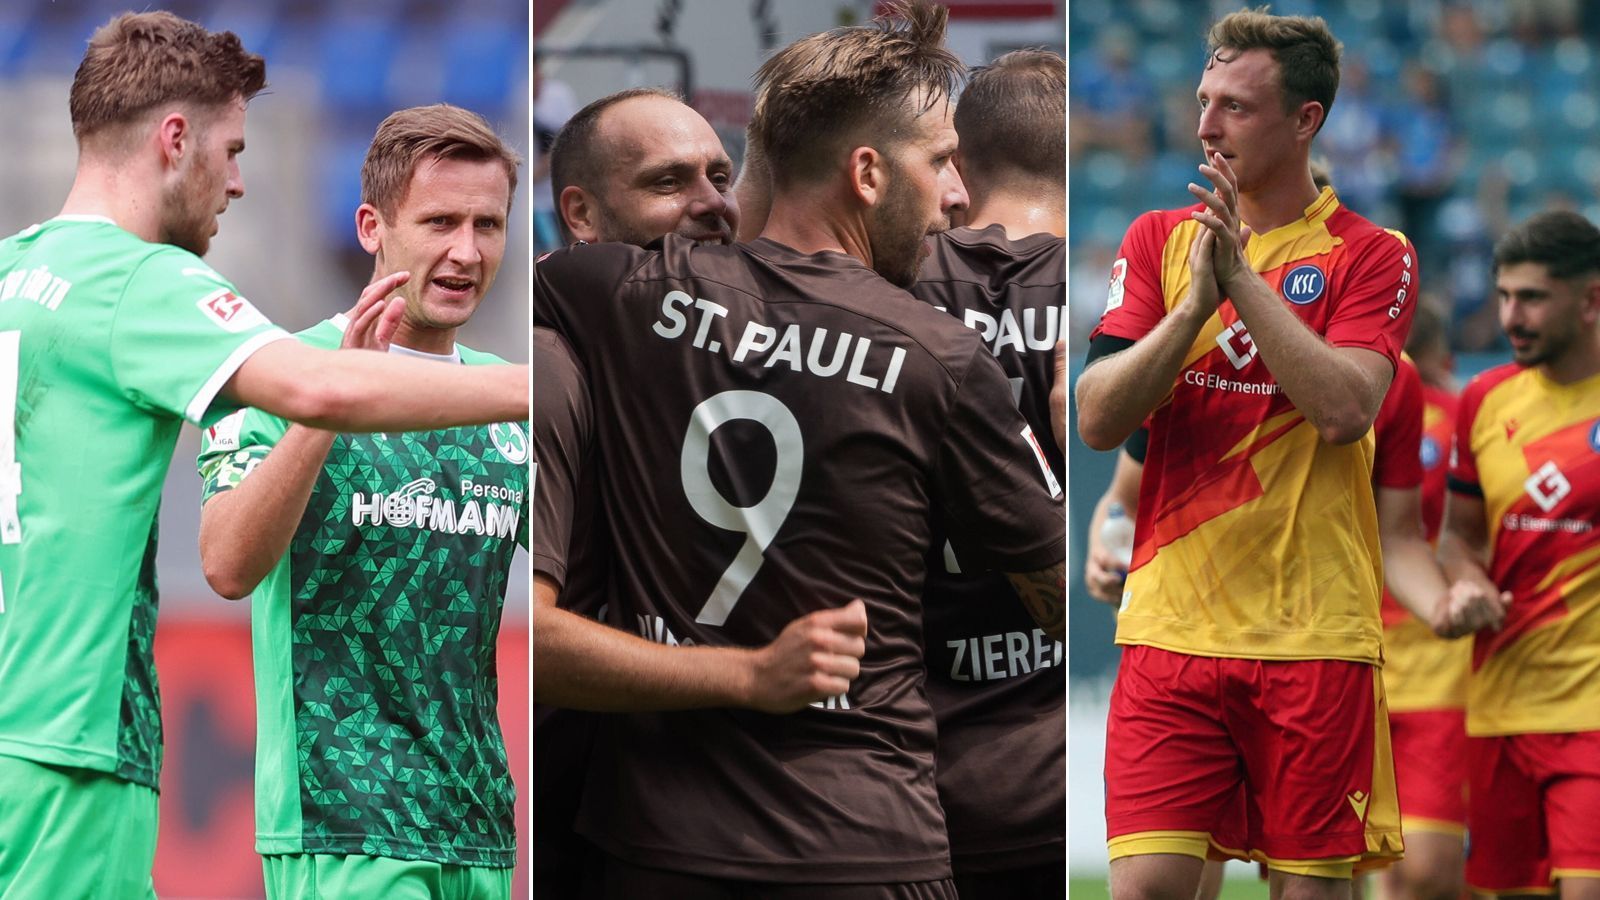 
                <strong>Top 10: Die Rekordteams der 2. Bundesliga mit den meisten Spielen</strong><br>
                Der FC St. Pauli (Mi.) geht in der Spielzeit 2021/22 in seine 25. Saison in der eingleisigen 2. Bundesliga und schließt damit zum bisherigen Rekordhalter Greuther Fürth (li.) auf. ran zeigt die Teams mit den meisten Spielen in der eingleisigen 2. Bundesliga seit 1981. (Anmerkung: Die 2. Bundesliga wird seit 1981 eingleisig geführt; die 3-Punkte-Regel ist inkludiert / Quelle: transfermarkt.de / Stand: 26. Juli 2021)
              